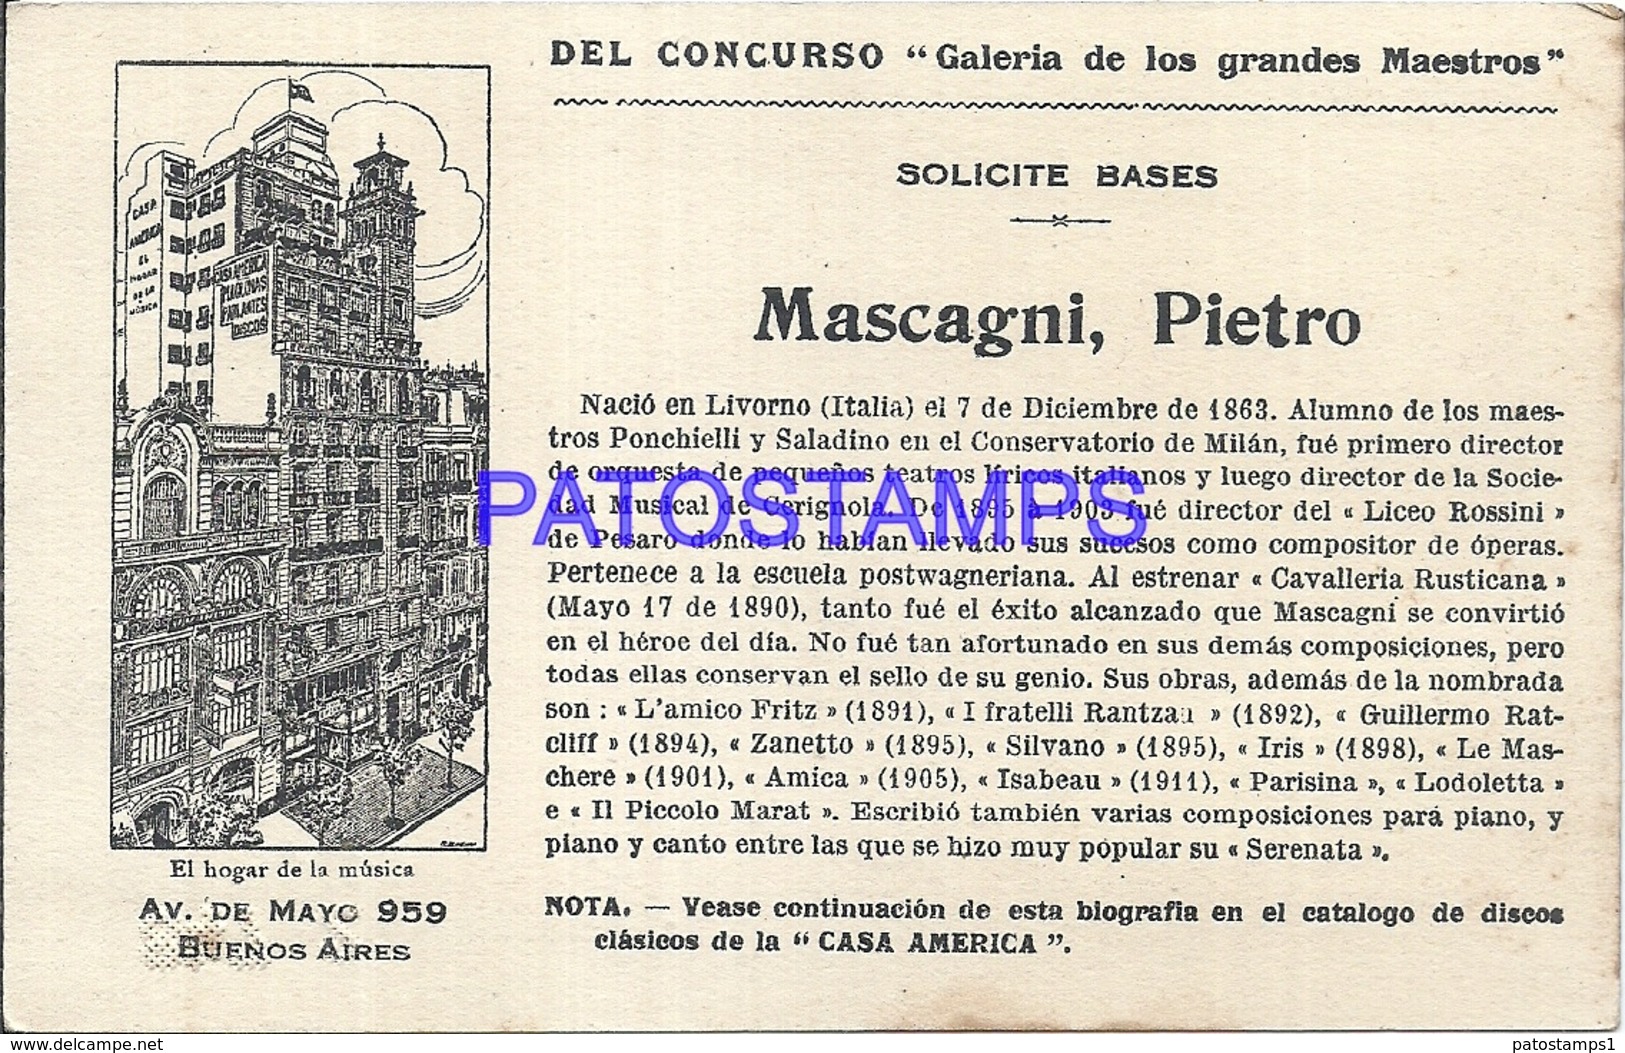 91002 PUBLICTY COMMERCIAL CASA AMERICA EL HOGAR DE LA MUSICA BS AS ARTIST MASCAGNI PIETRO LIRICO NO POSTAL POSTCARD - Publicidad